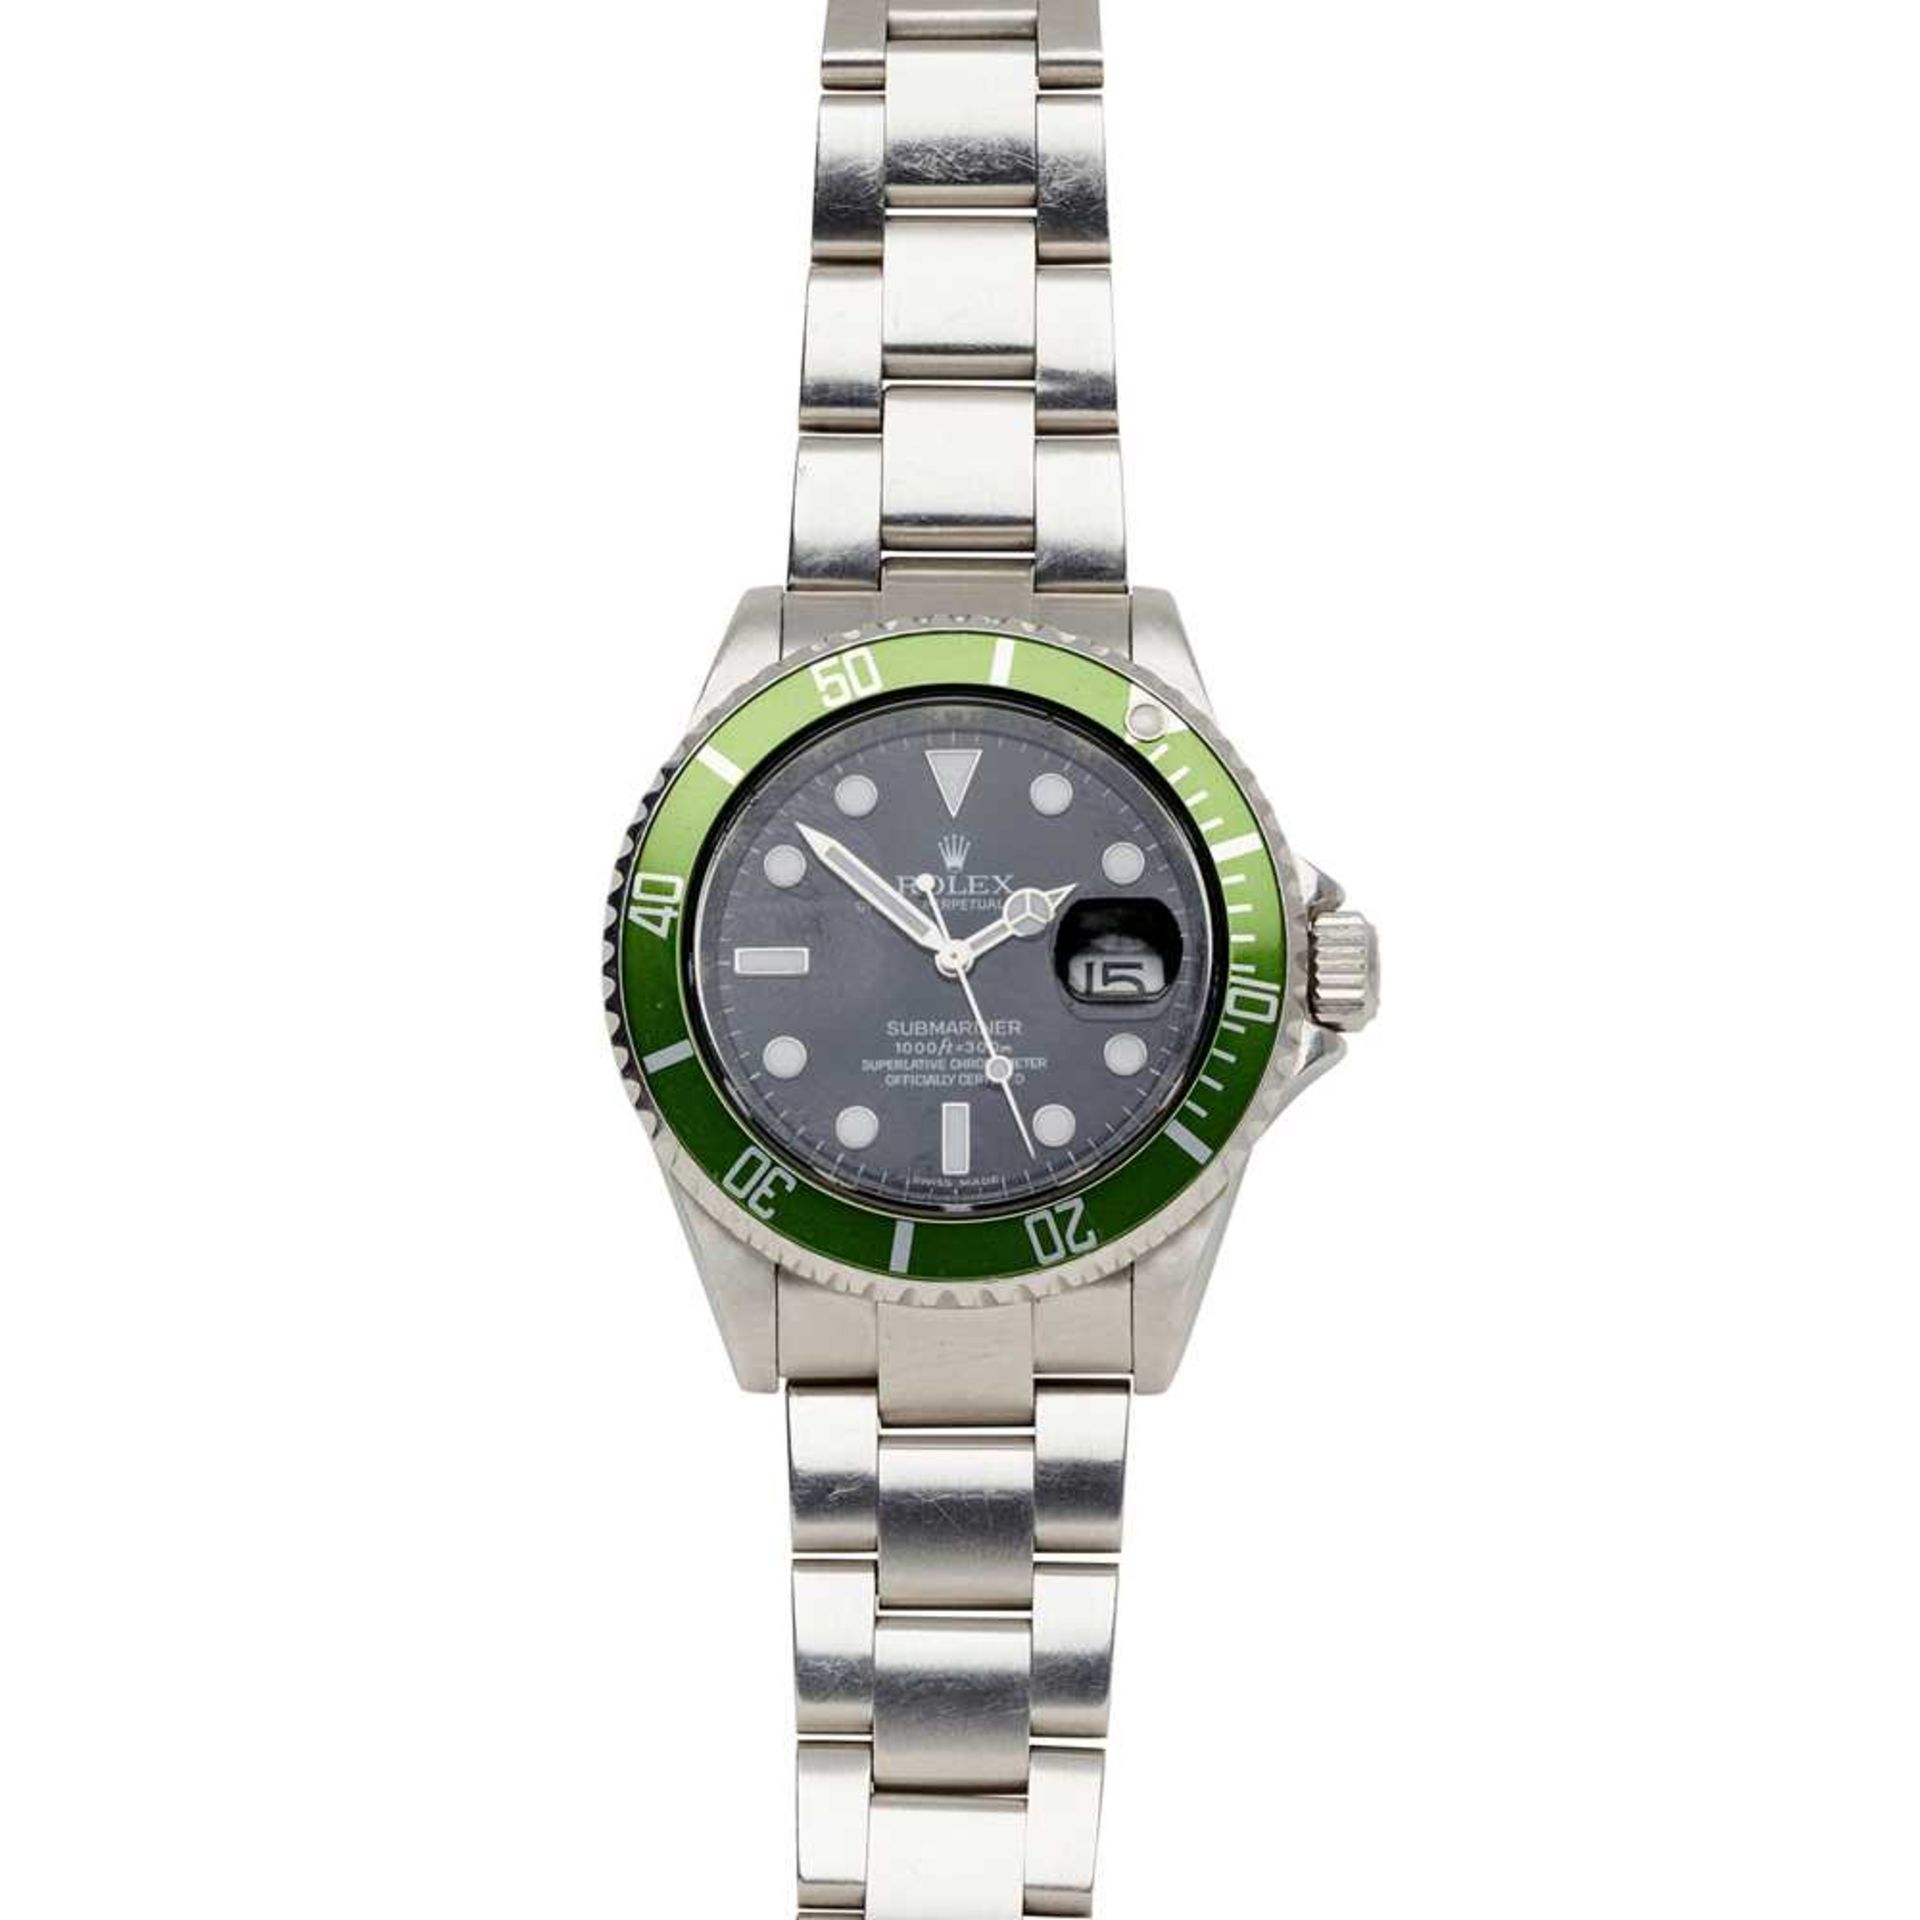 Rolex: a 'Kermit' stainless steel wrist watch